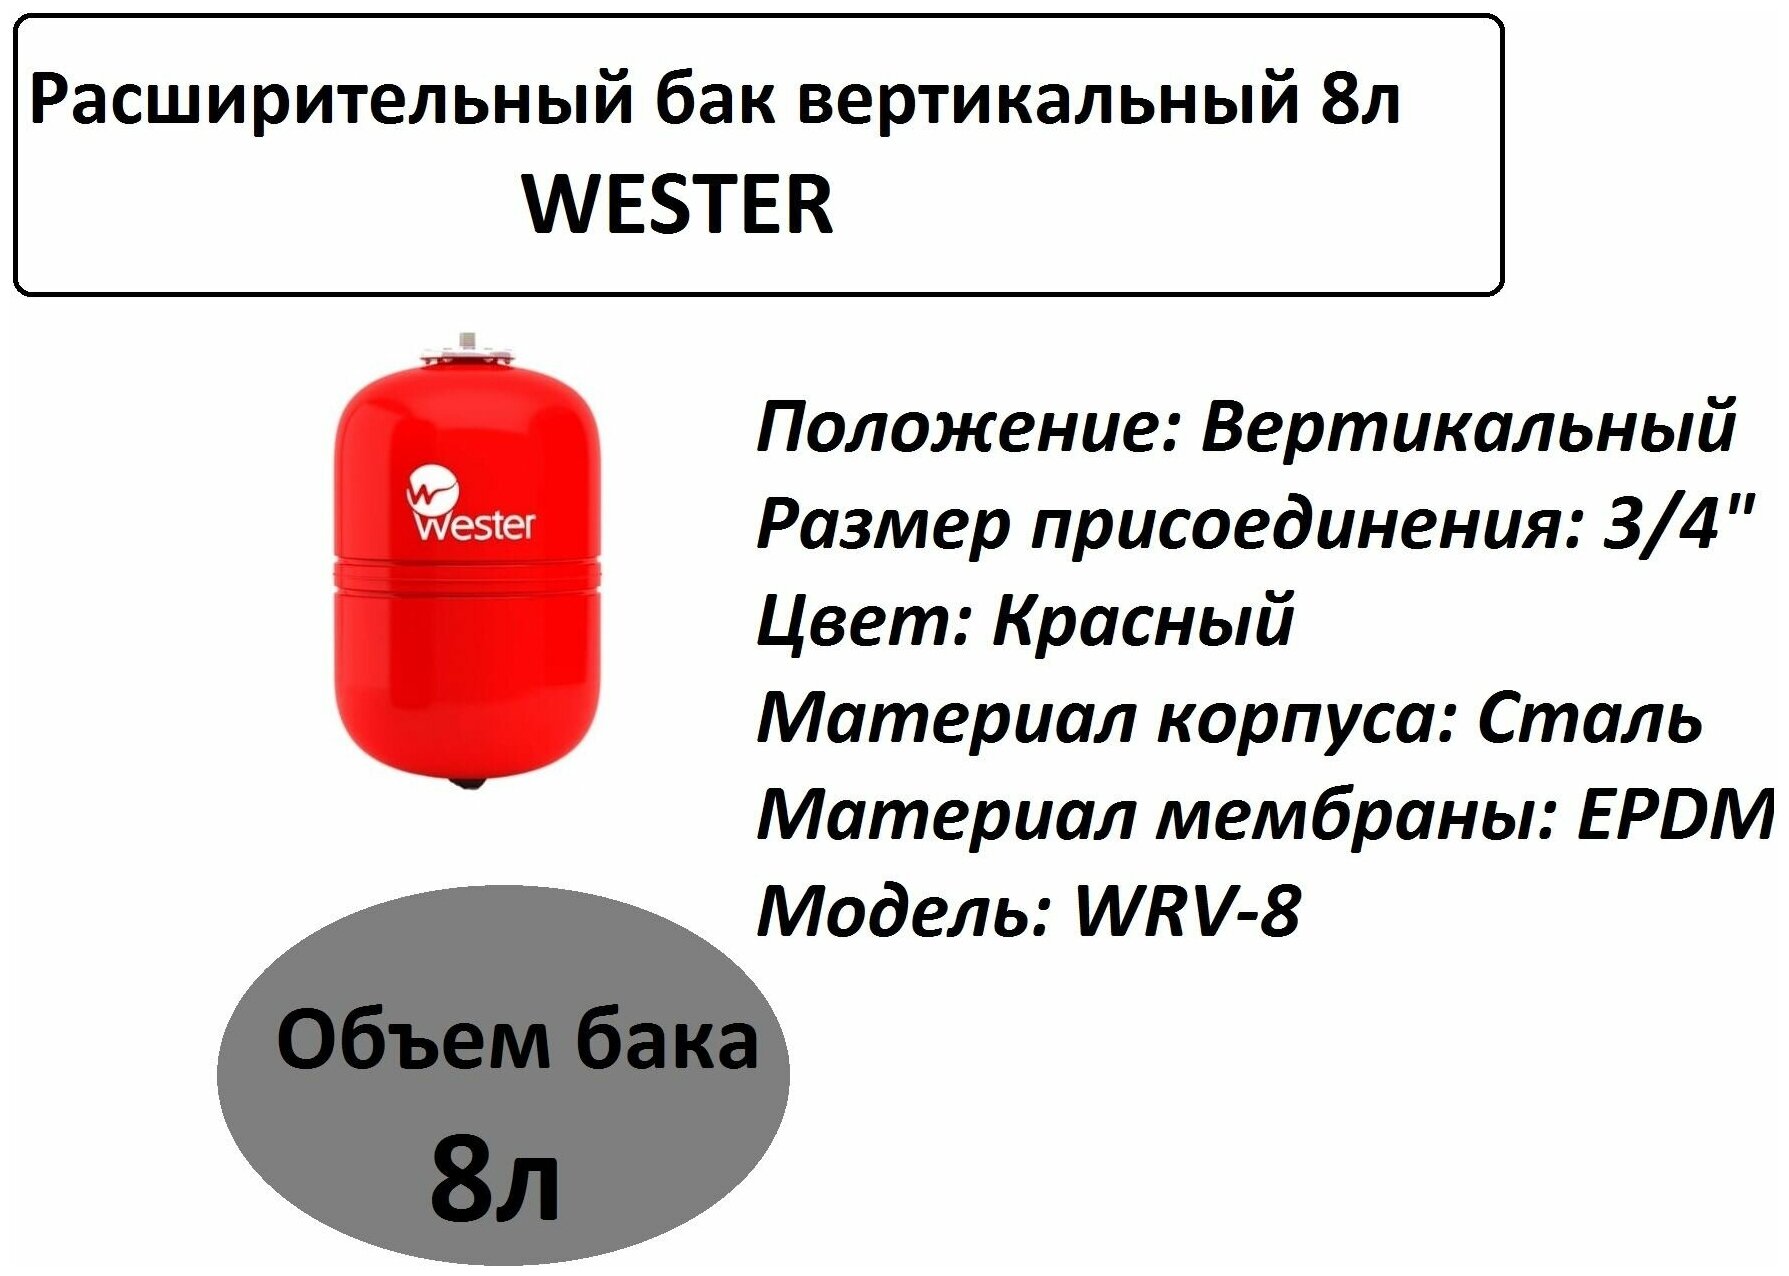 Расширительный бак Wester - фото №8